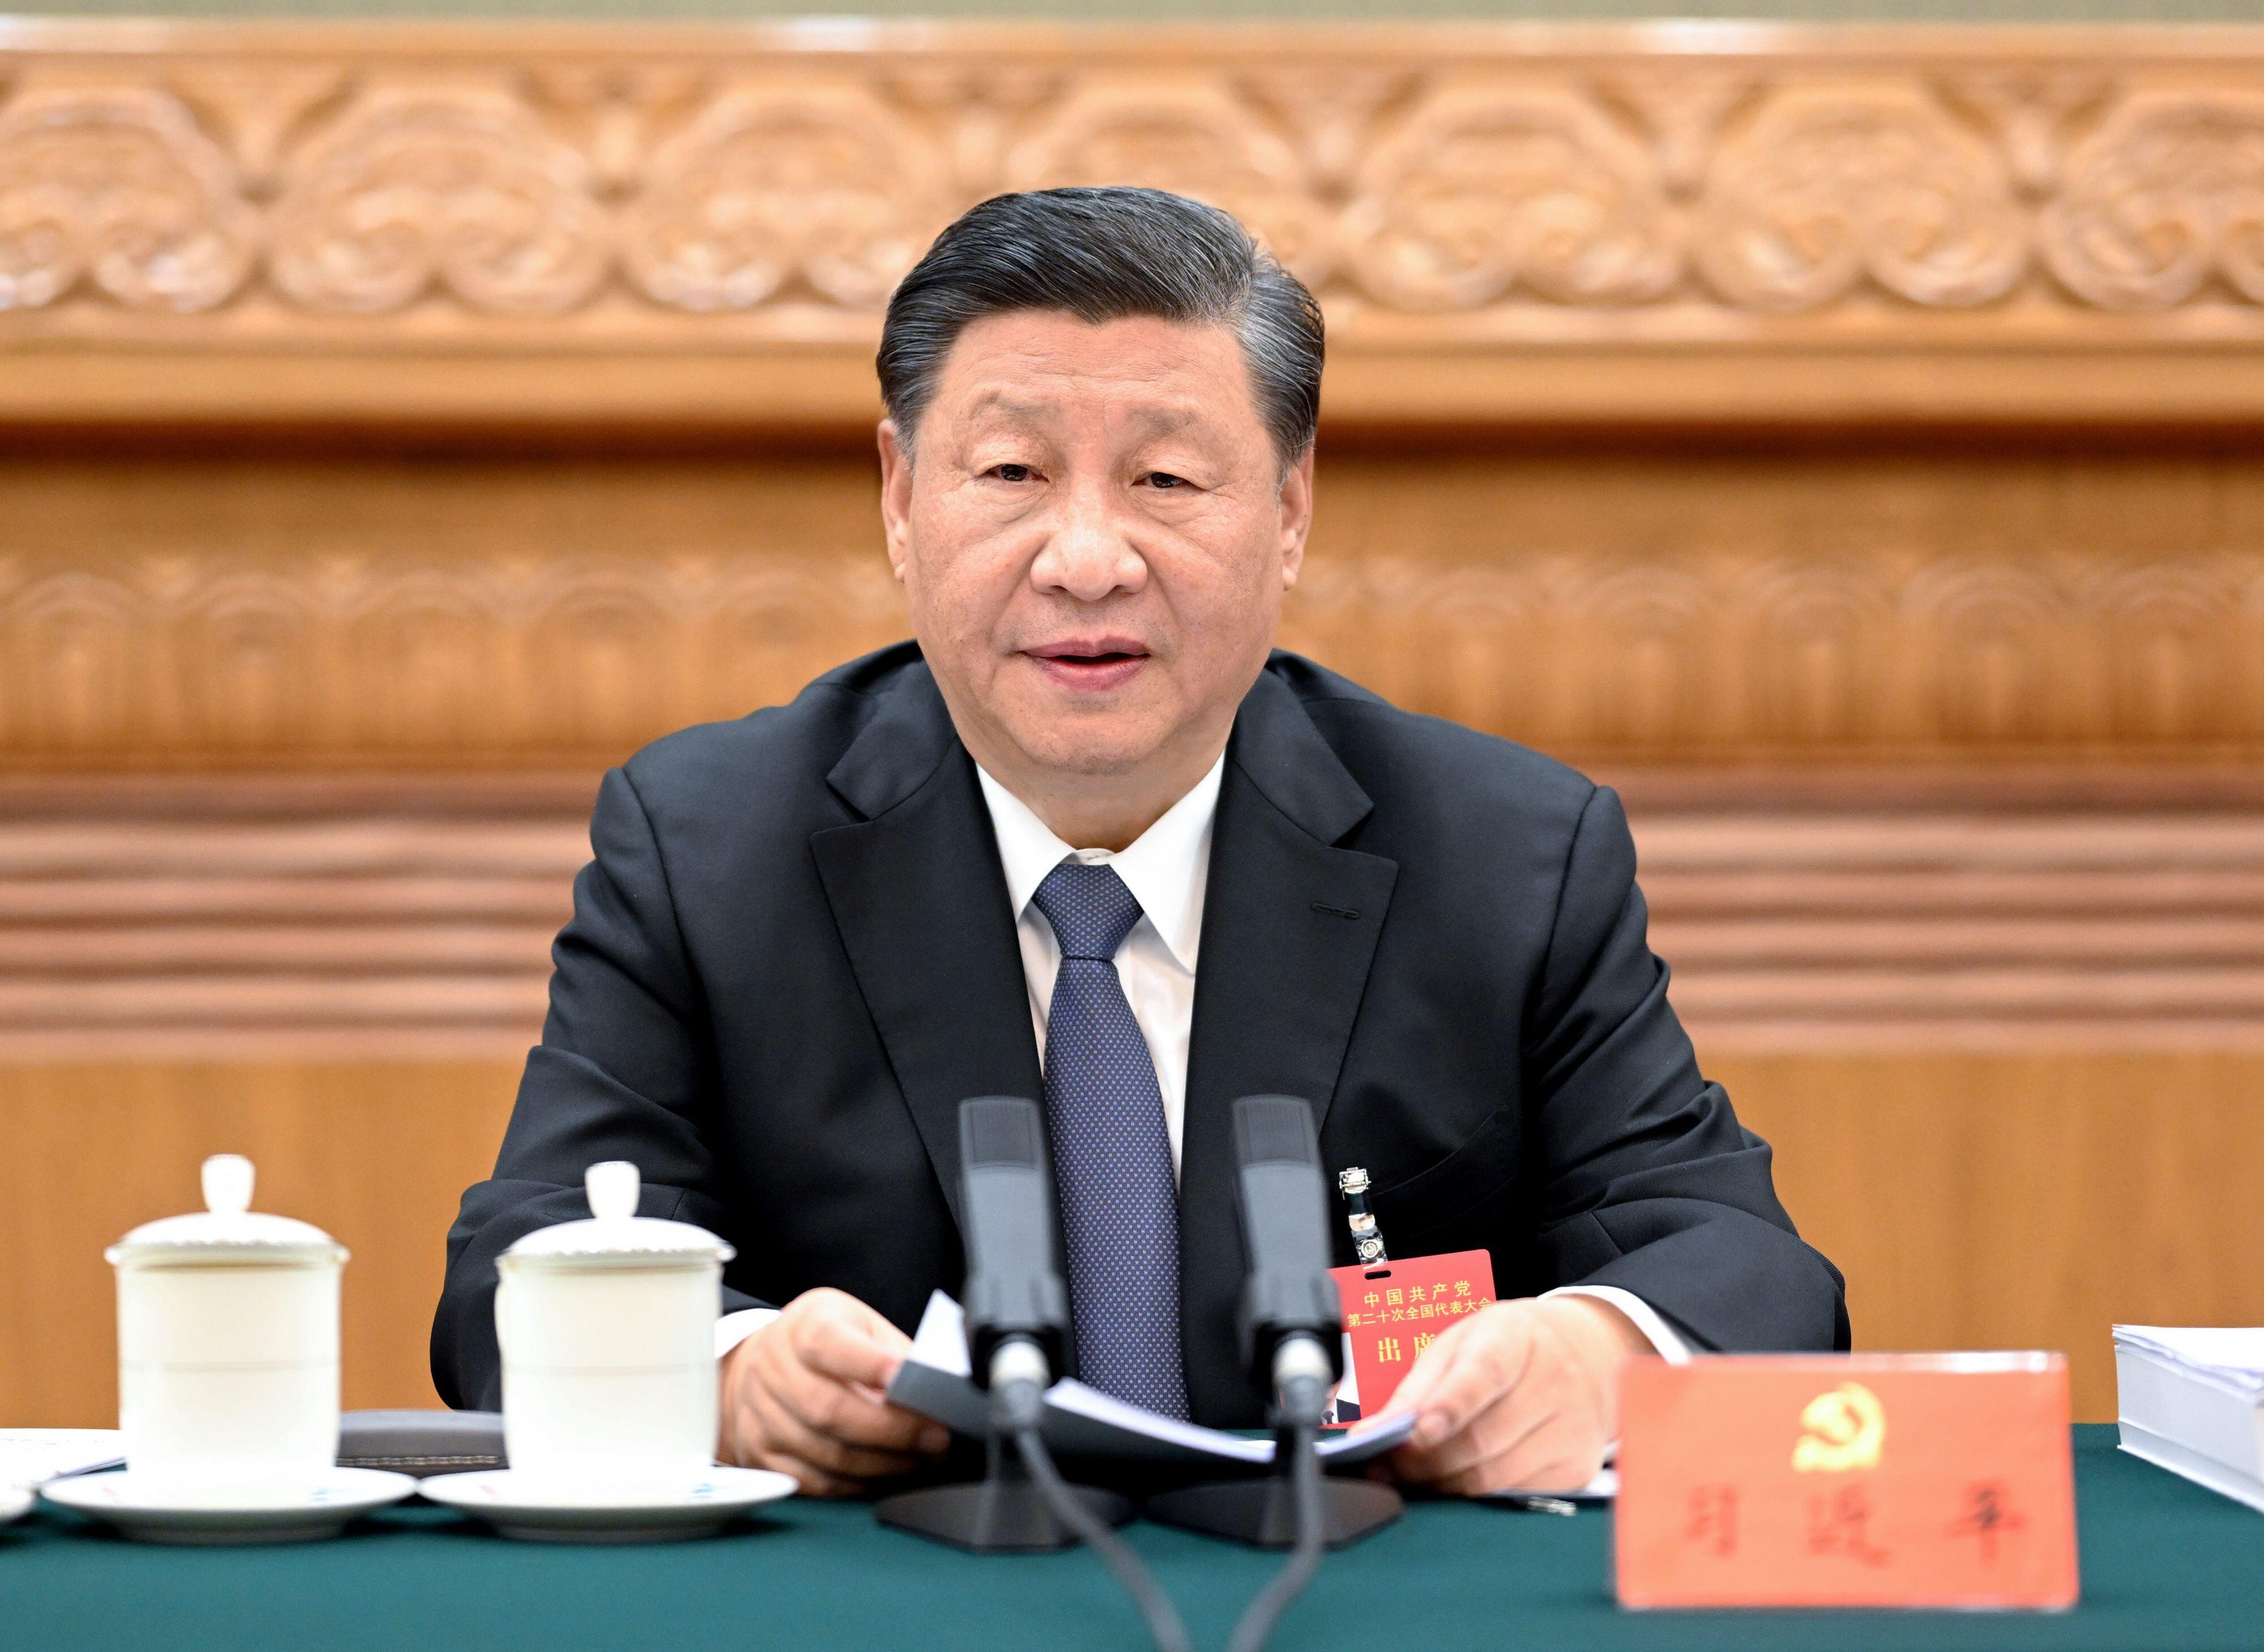 Sir Peter también habló sobre el riesgo que representa Xi Jinping de China.